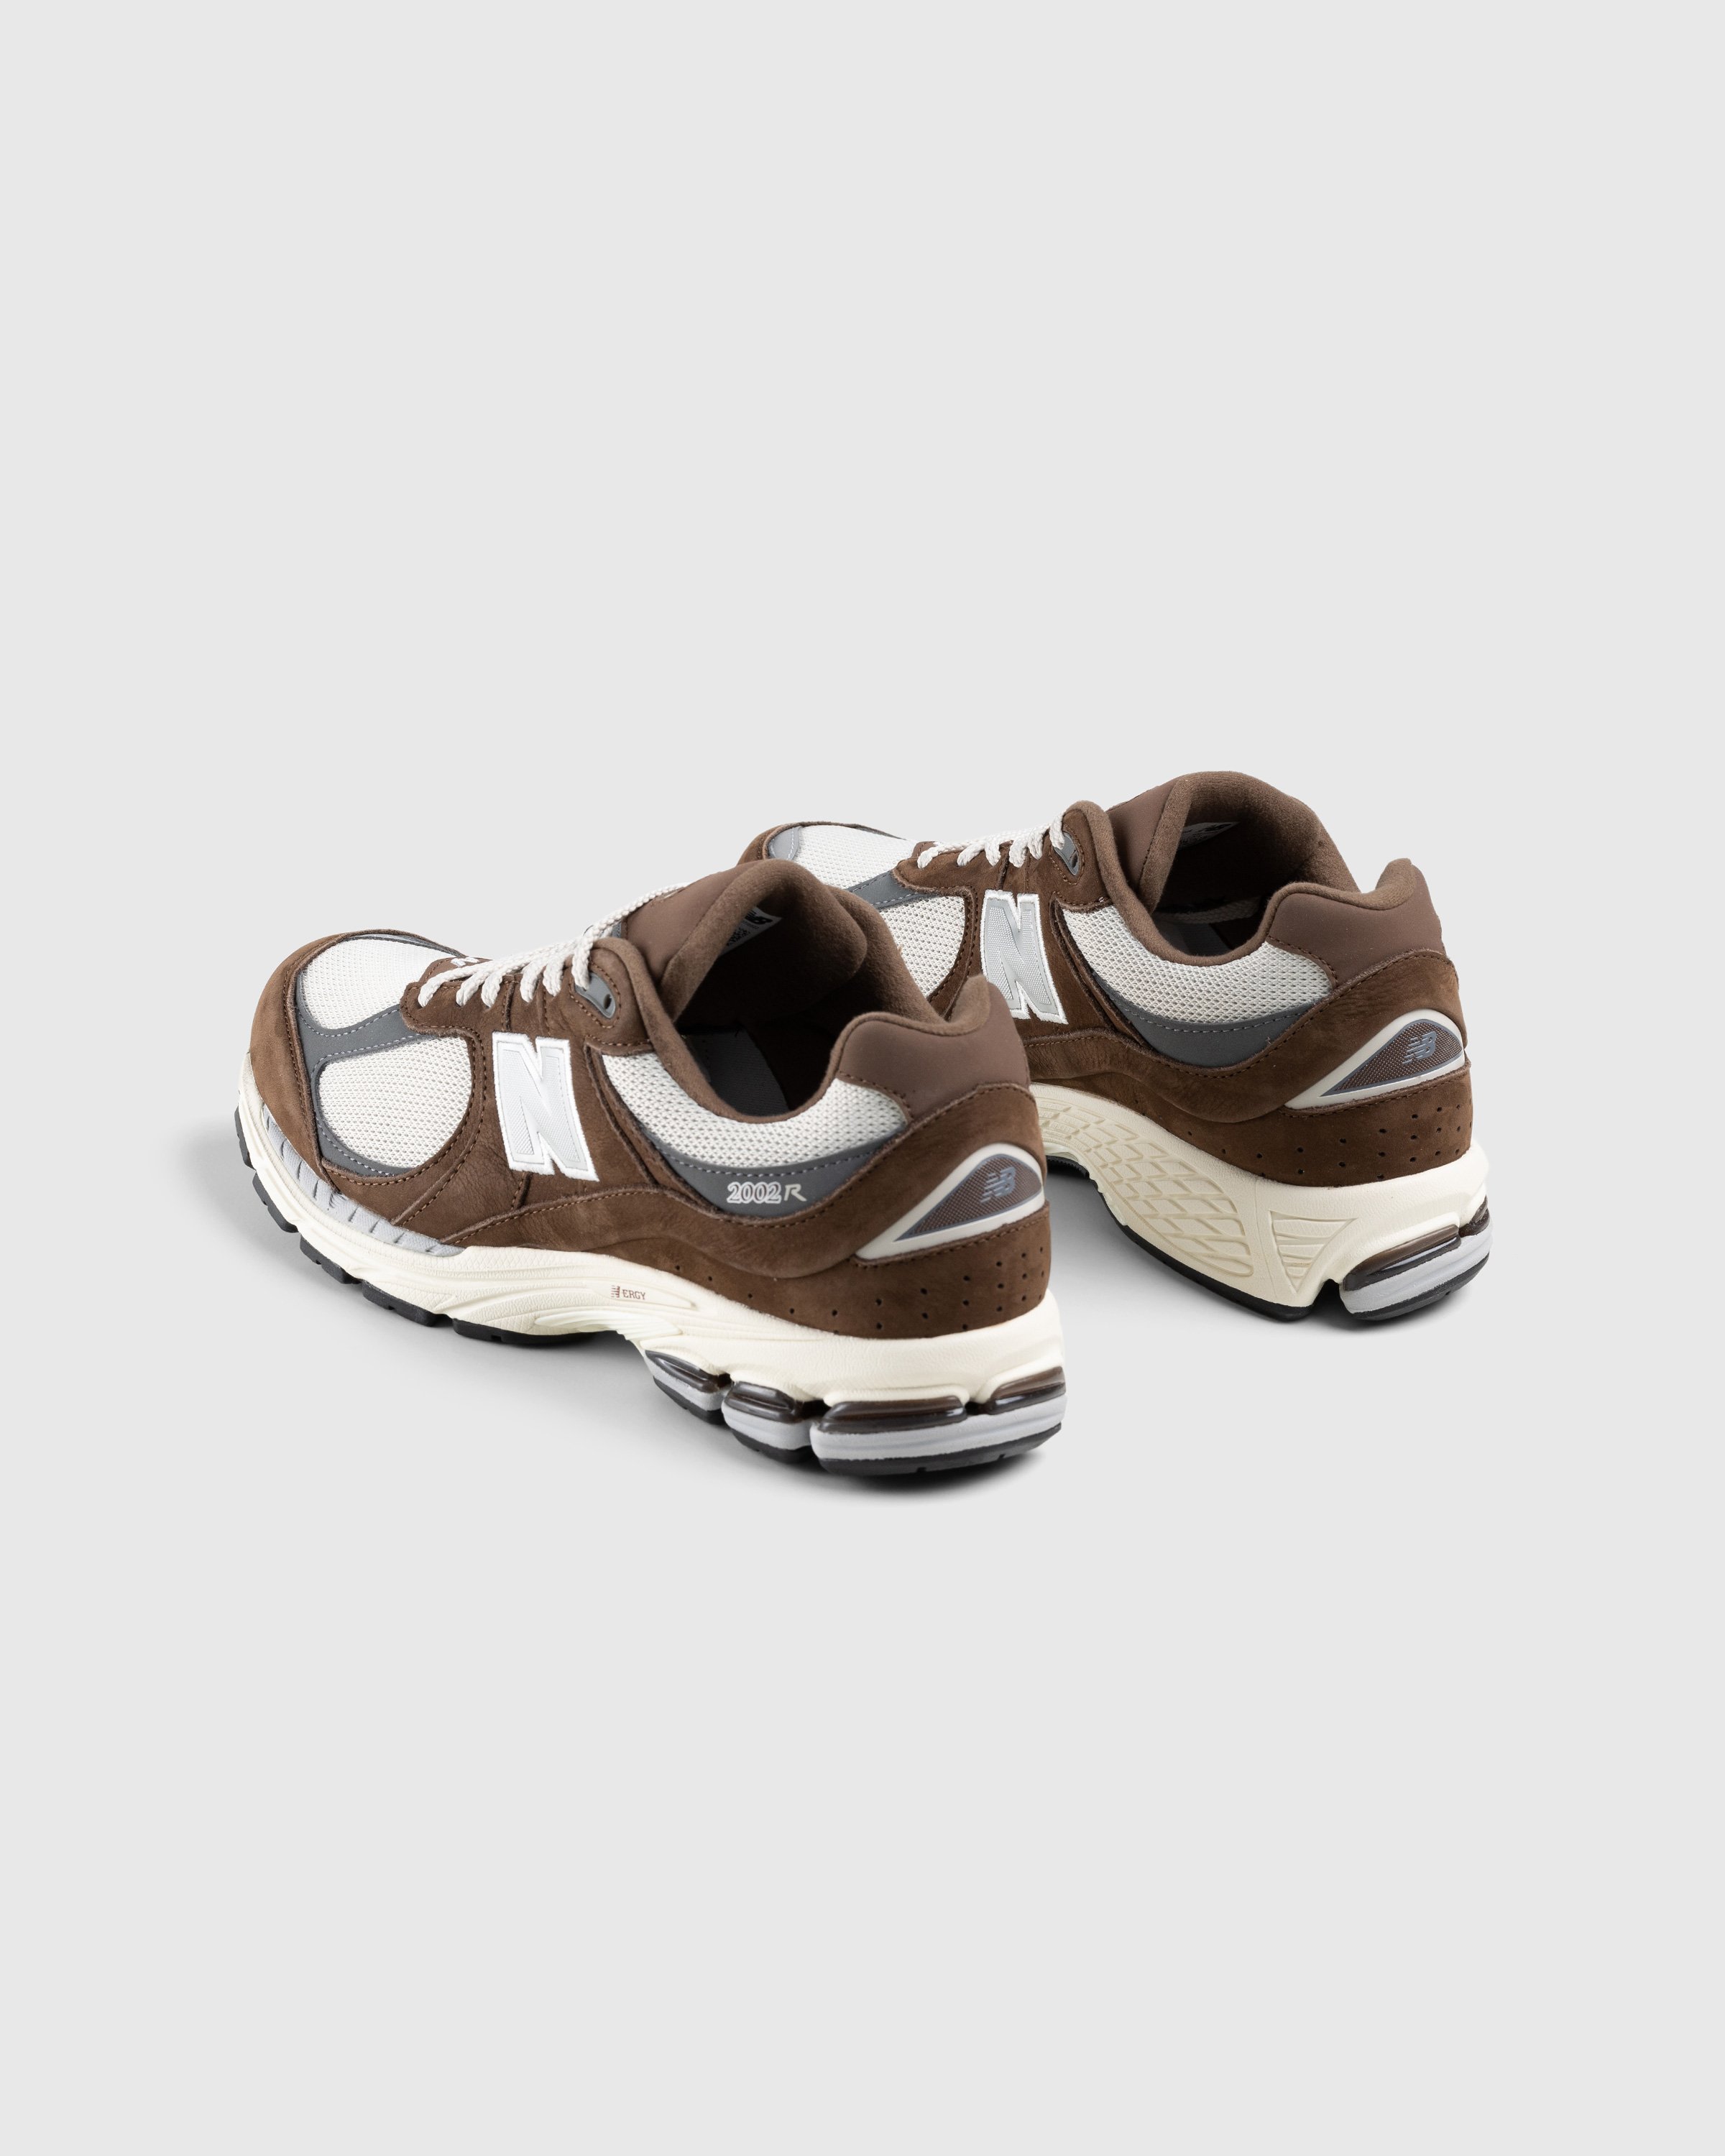 New Balance - M2002RHS Moonbeam - Footwear - Brown - Image 4